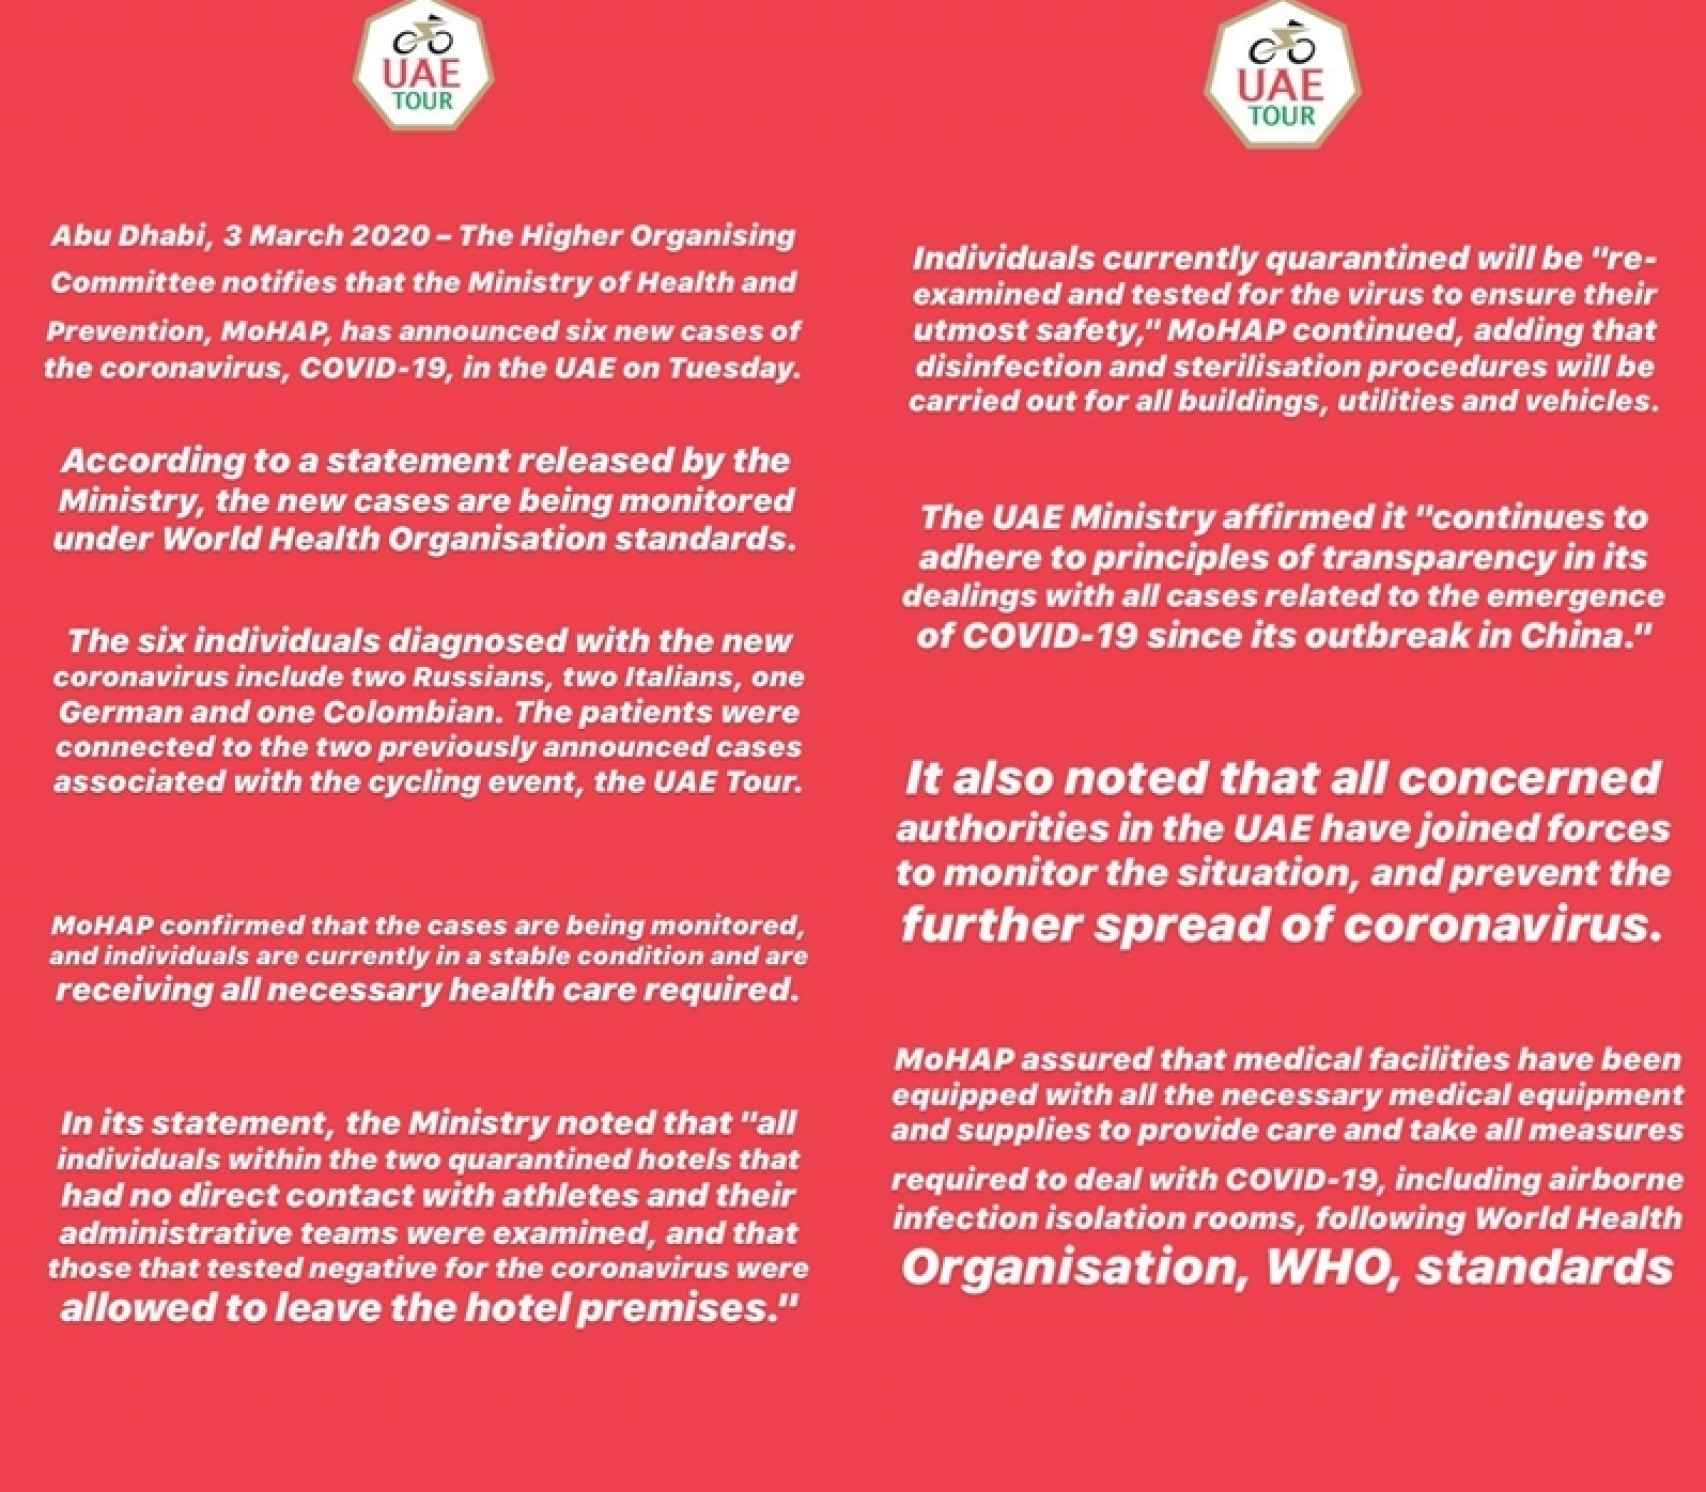 El comunicado oficial de la organización del UAE Tour confirmando los casos de coronavirus